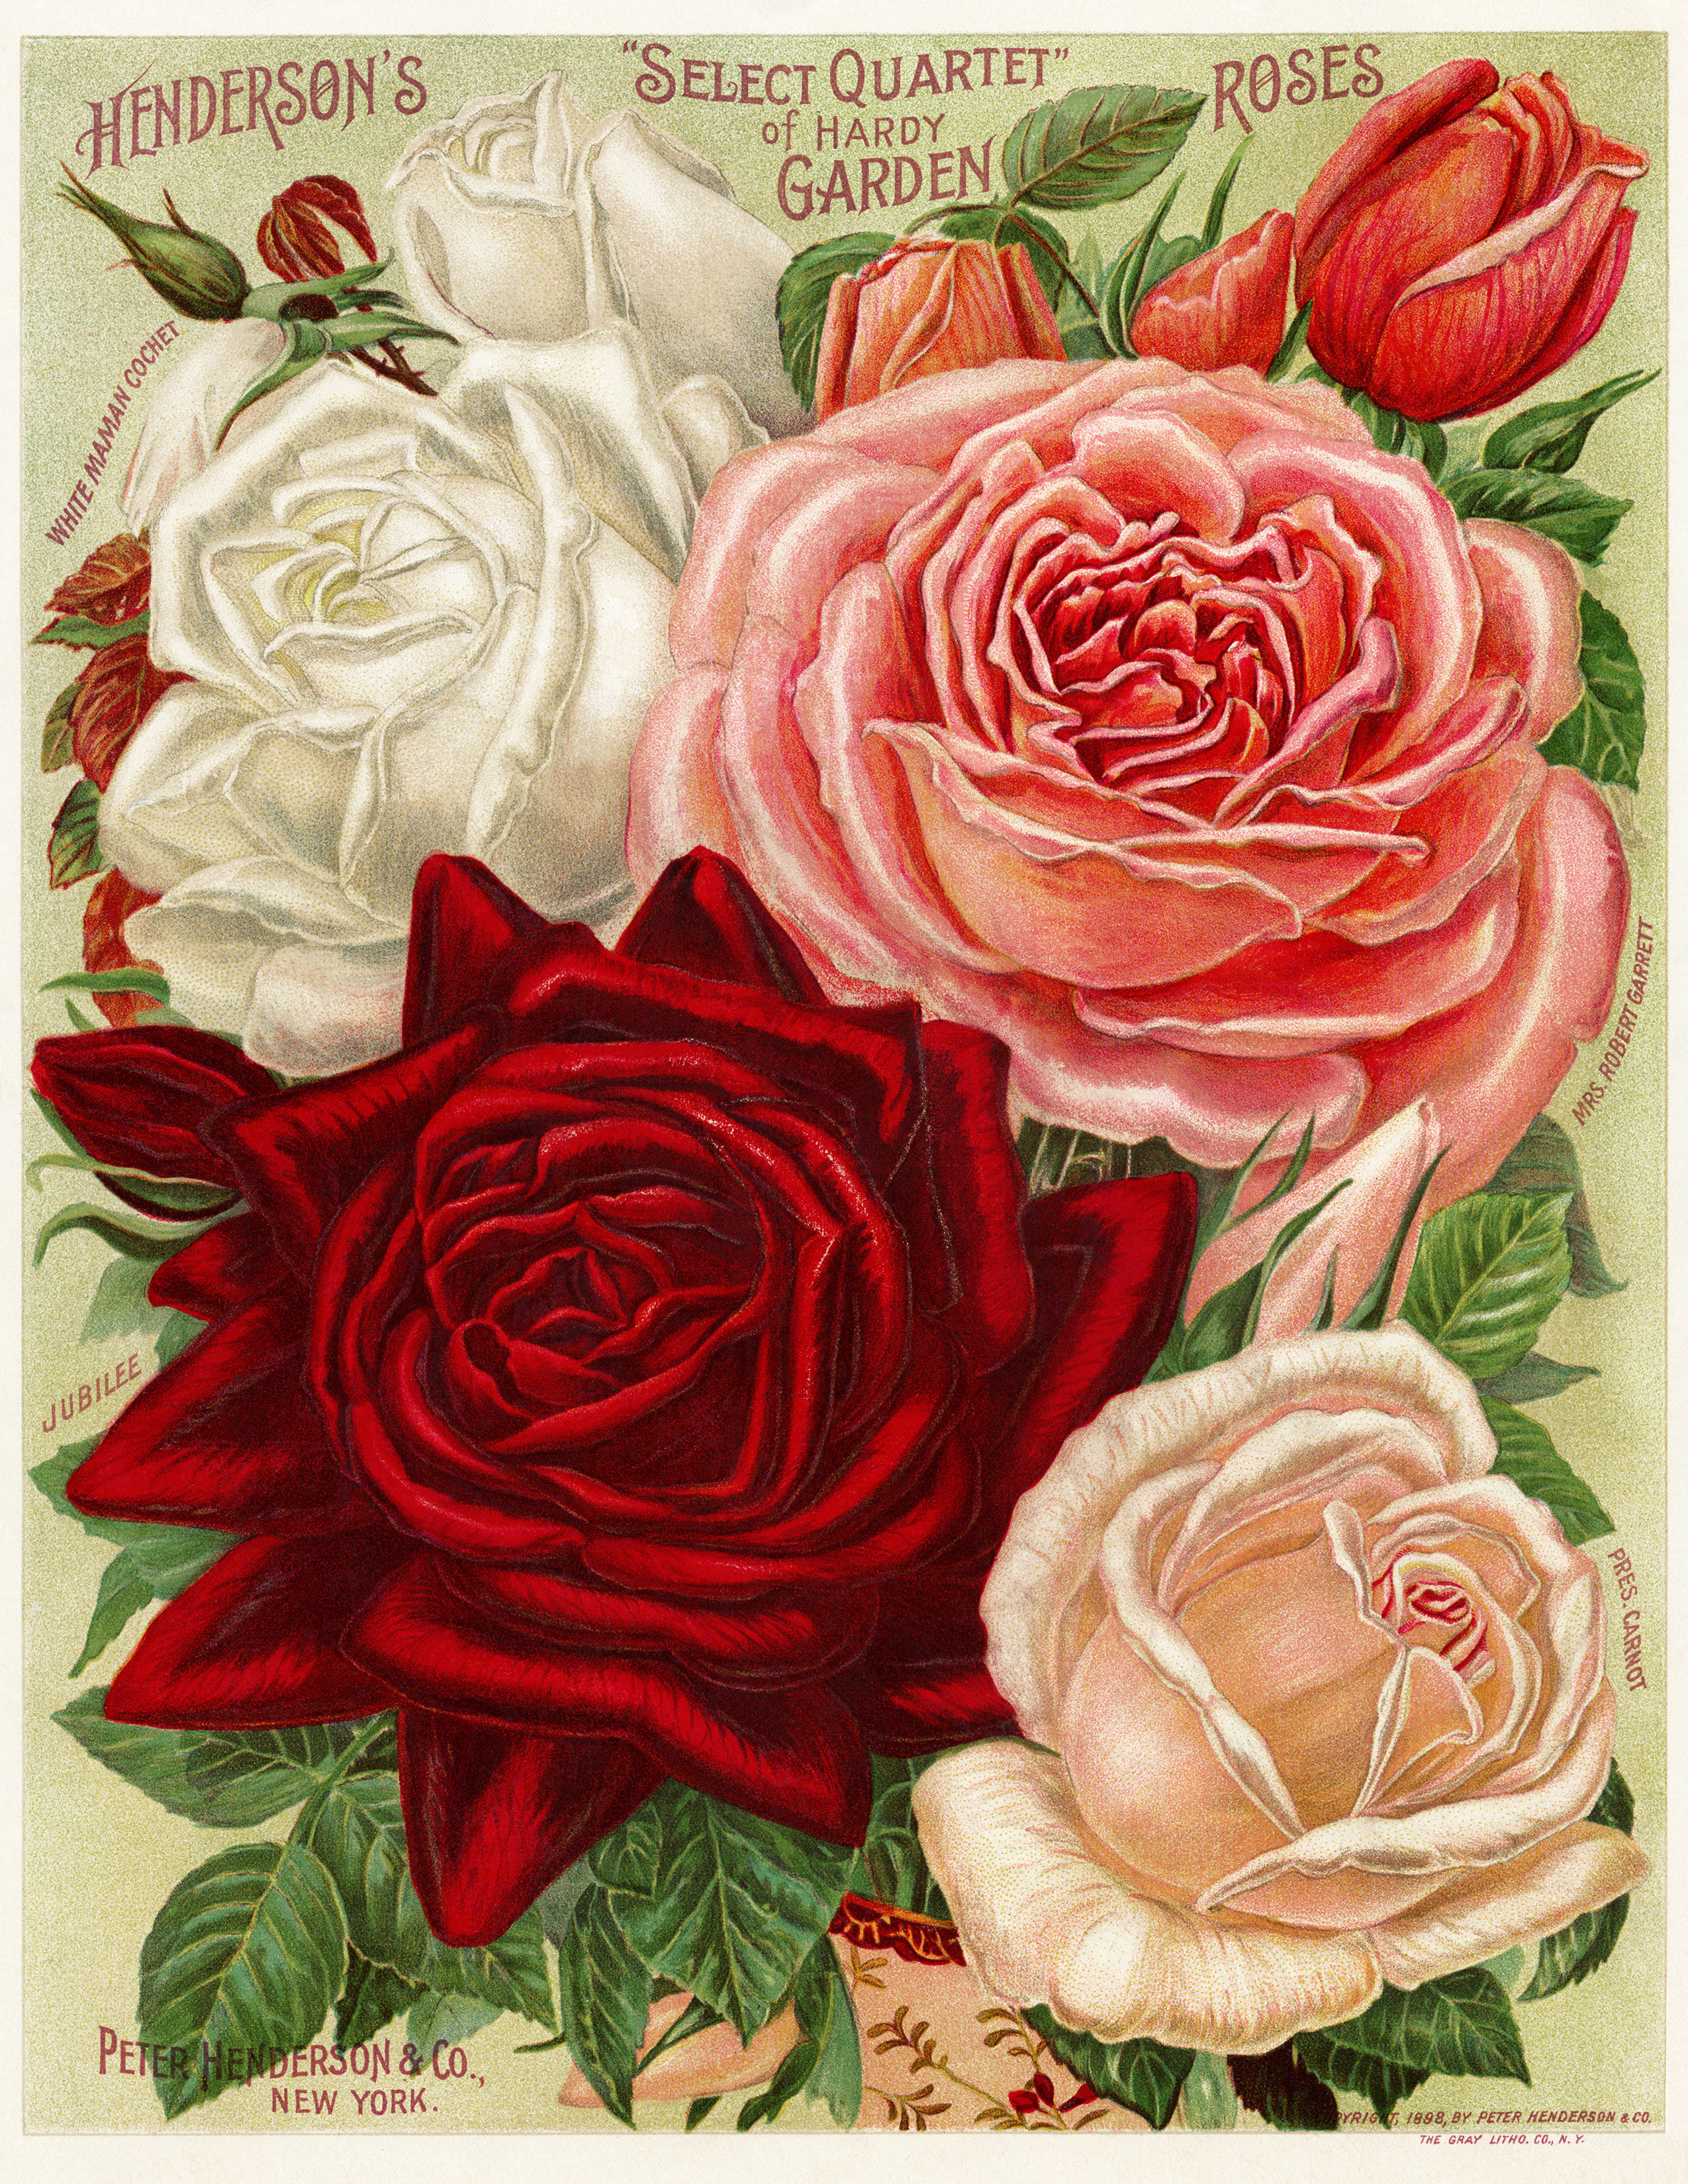 vintage garden illustration, flower garden printable, vintage rose illustration, Henderson’s roses, vintage floral graphics